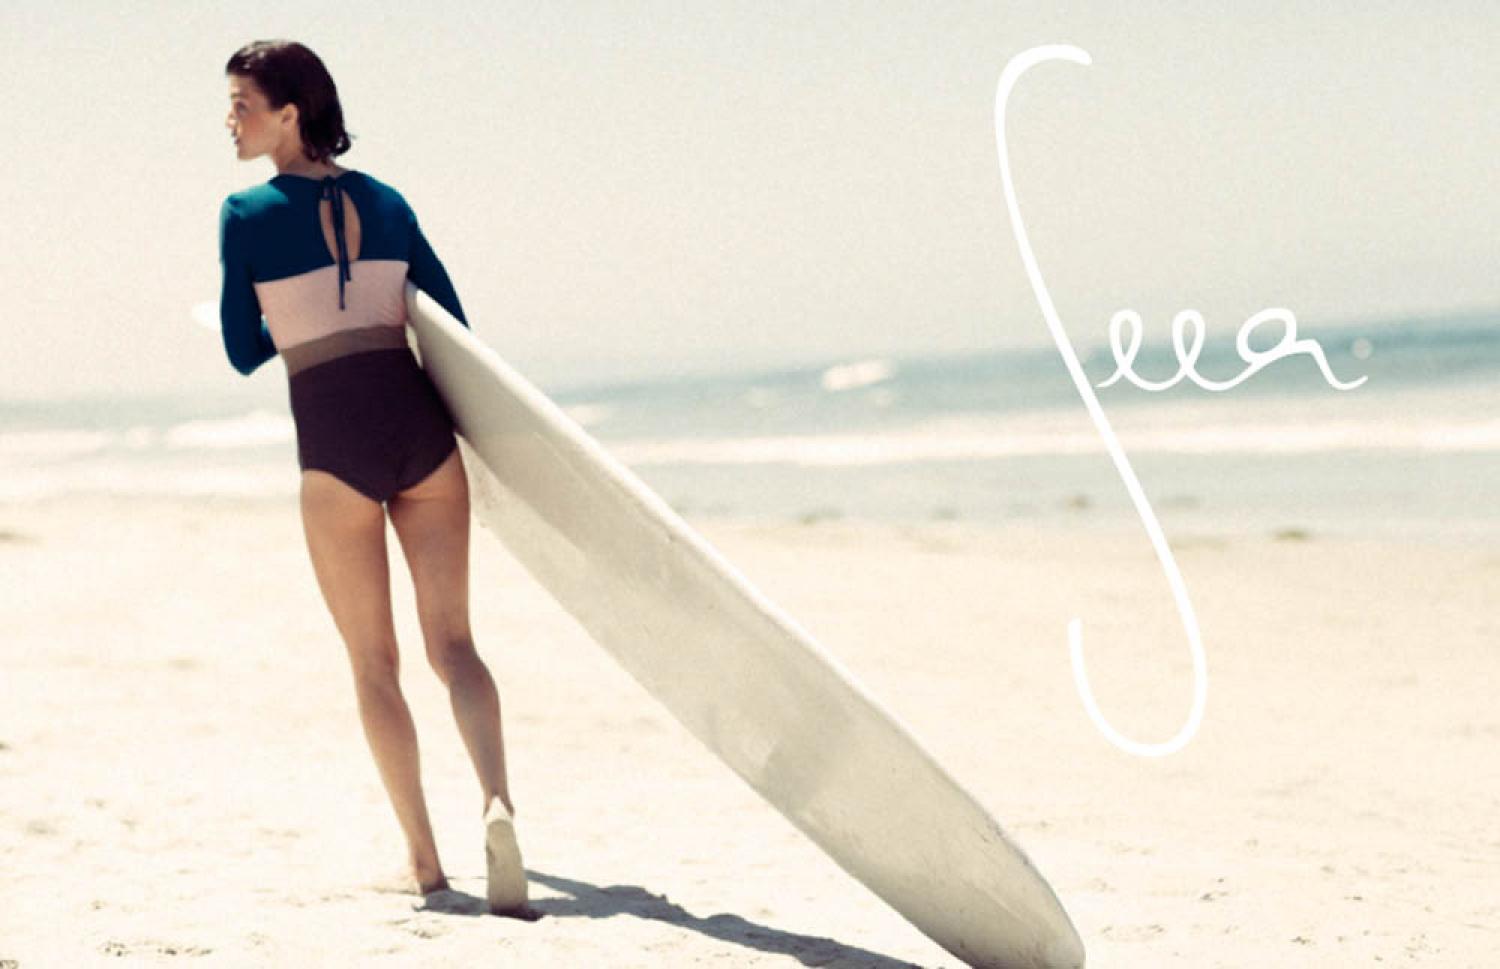 Seea|沖縄サーフィンショップ「YES SURF」